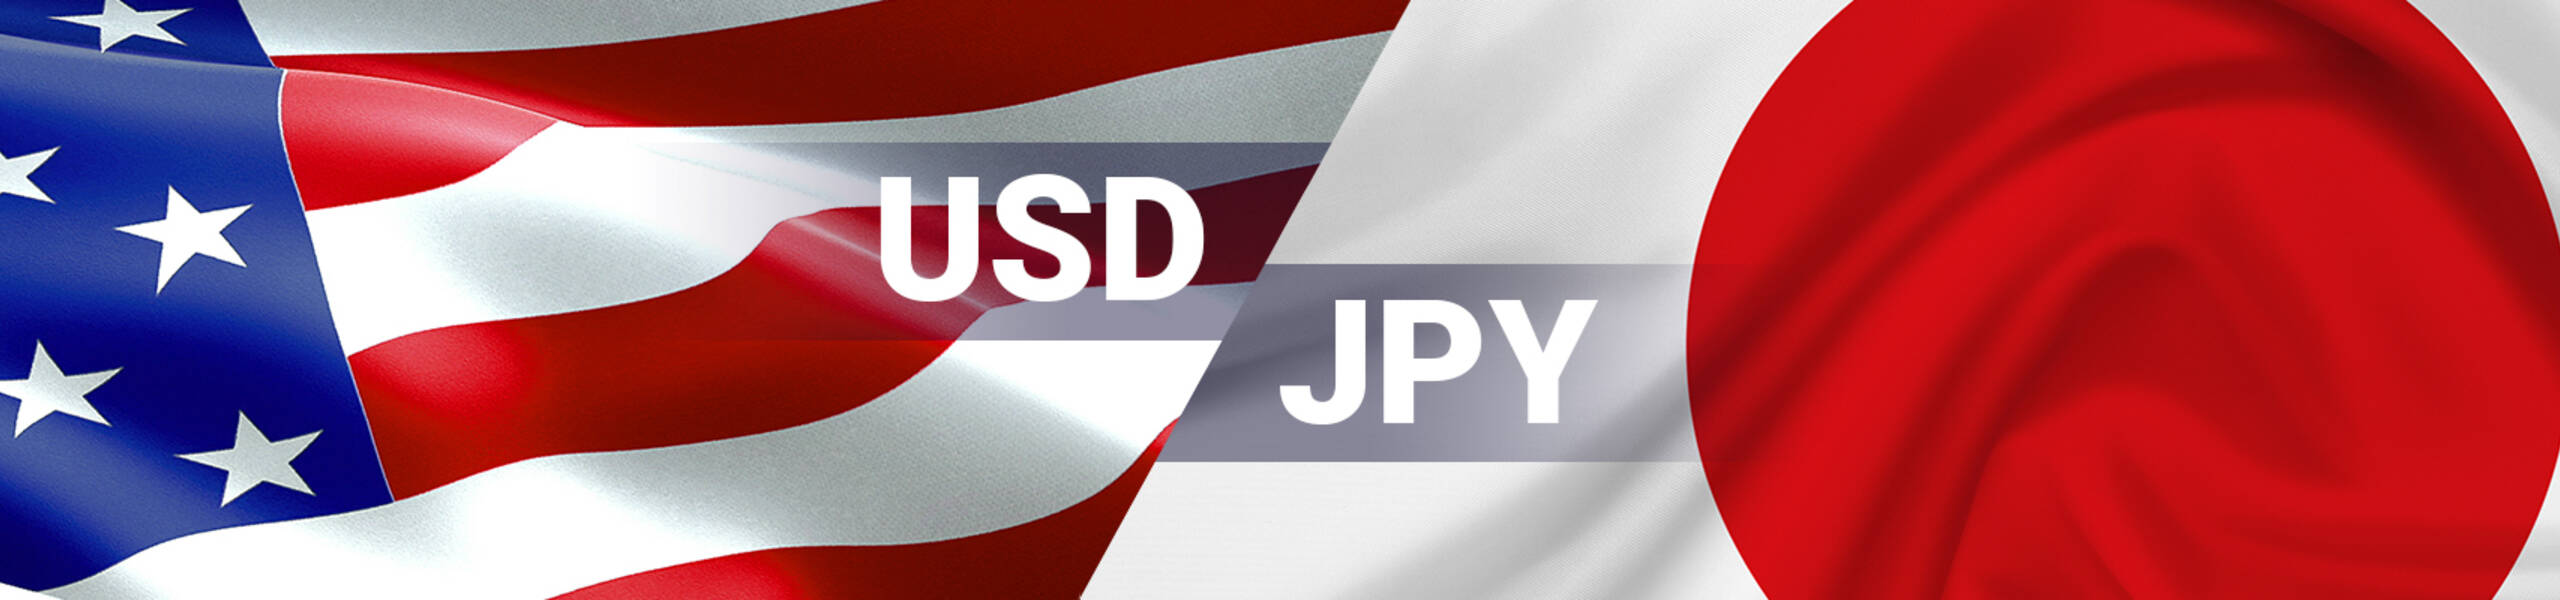 USD/JPY en zona de rebote alrededor de 113.15 (61.8%)